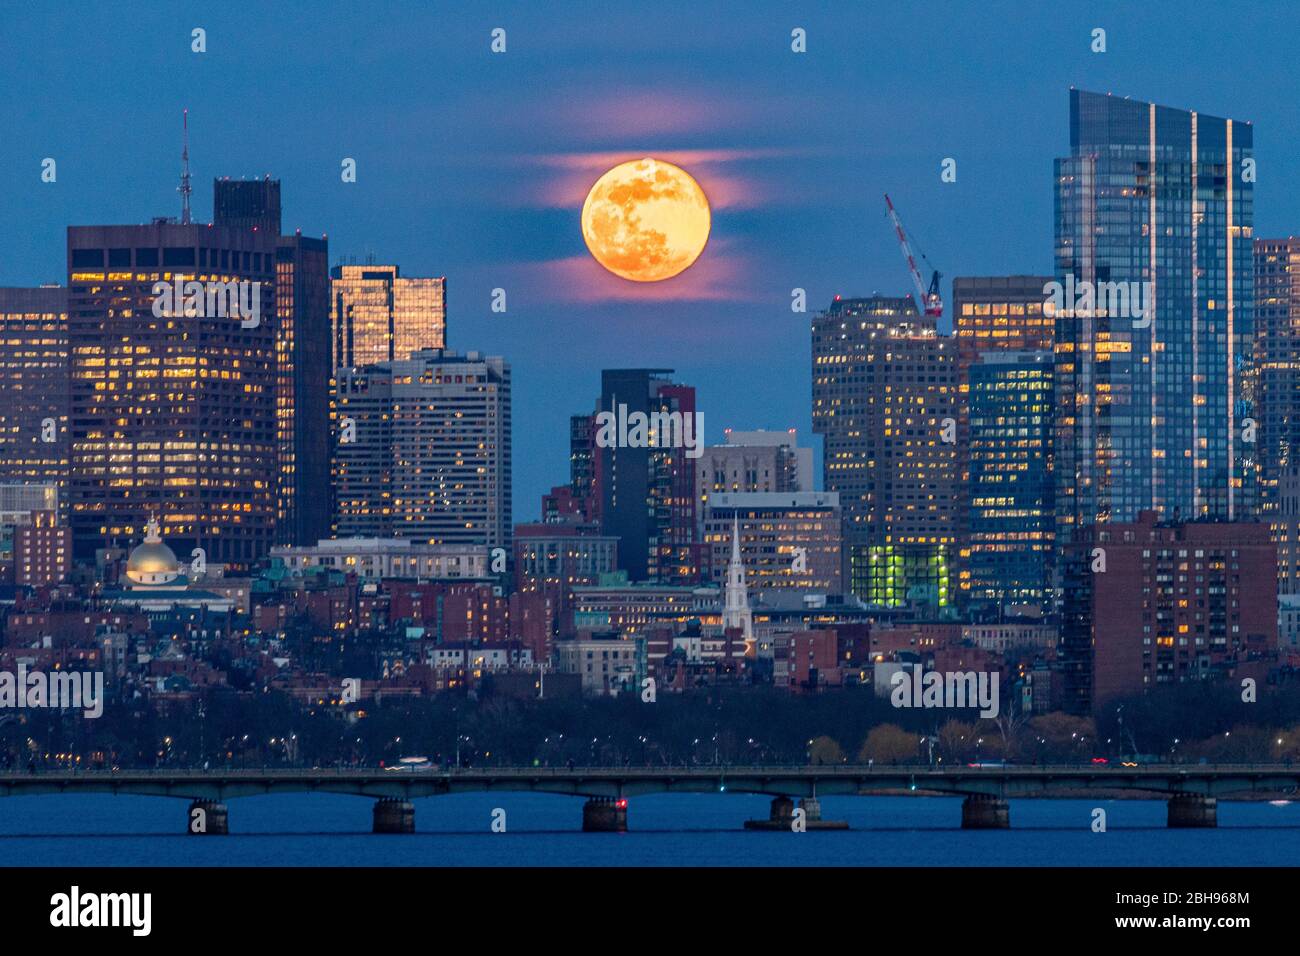 La lune s'élève au-delà de la ville et se situe entre les bâtiments à l'heure bleue. Banque D'Images